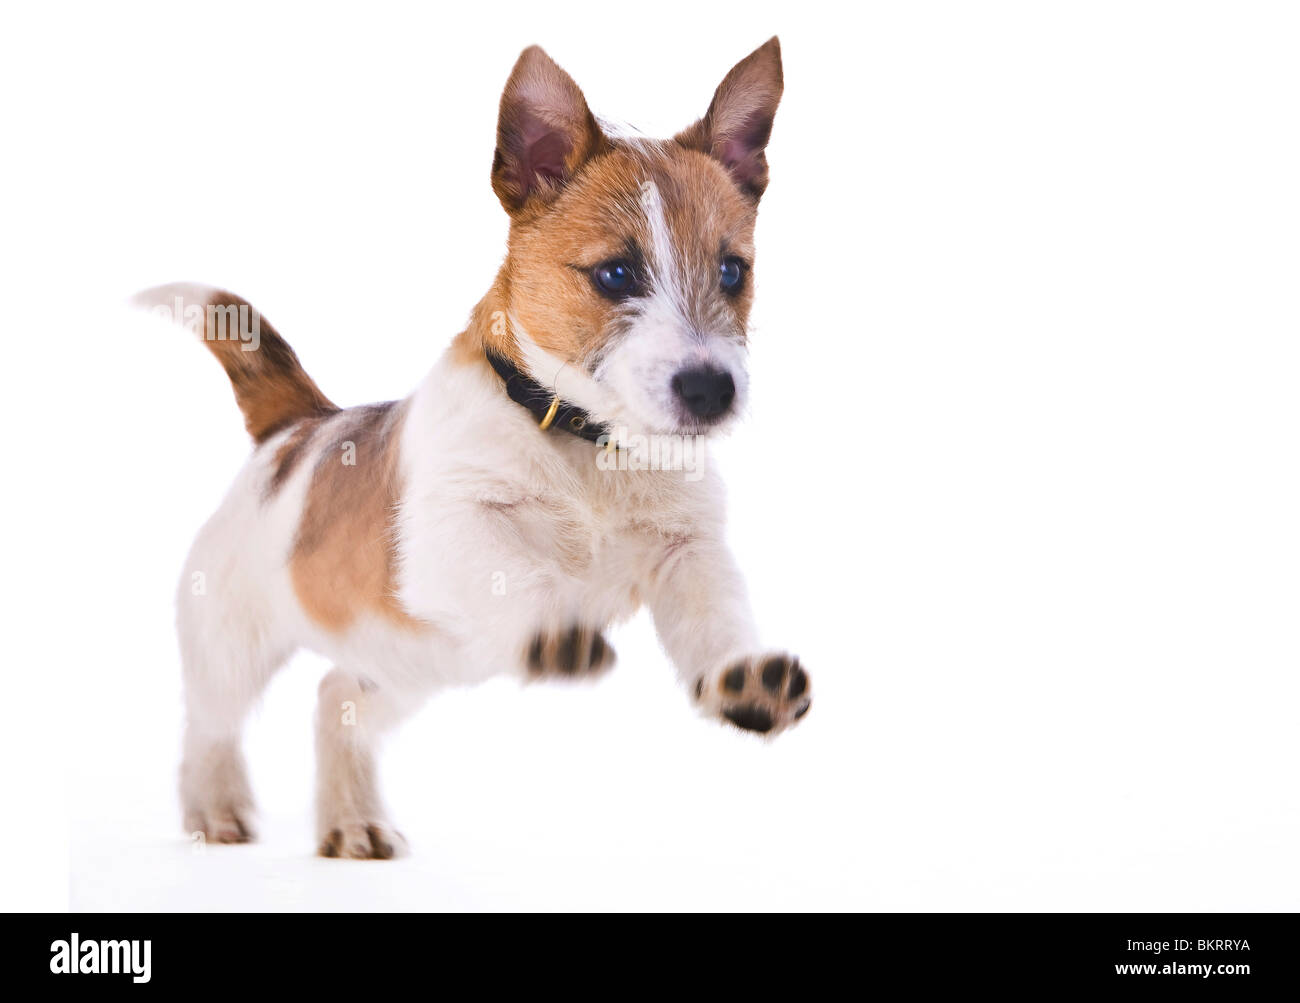 Jack Russell cucciolo marrone e bianco in studio Foto Stock